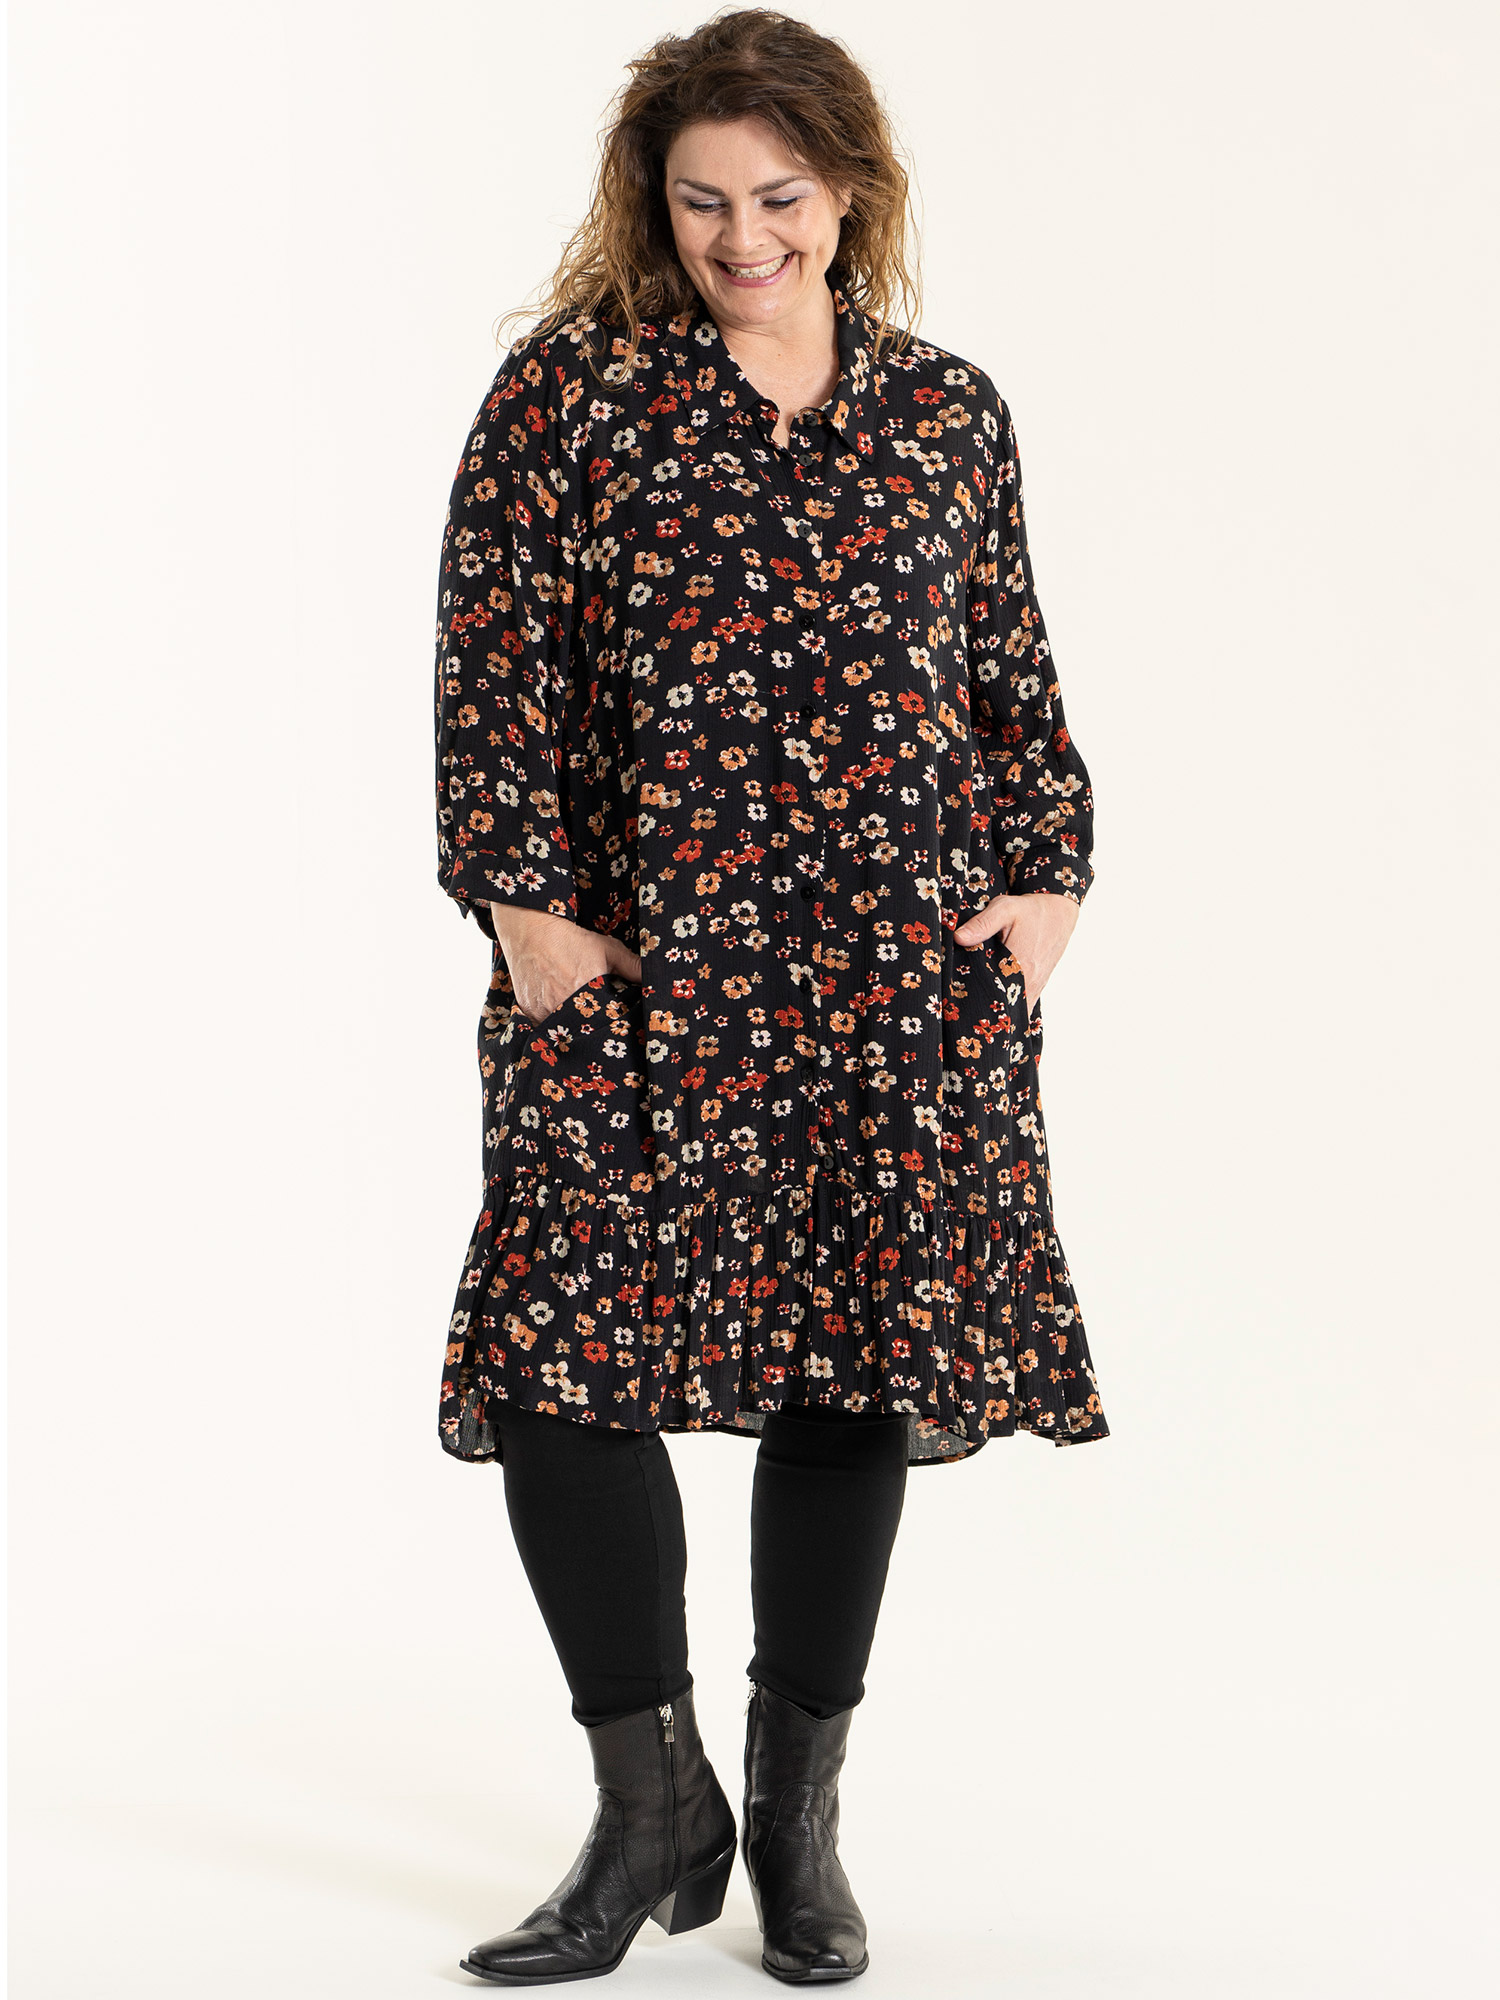 EDITH - Svart skjorte tunika i crepet viskose med blomster print fra Gozzip